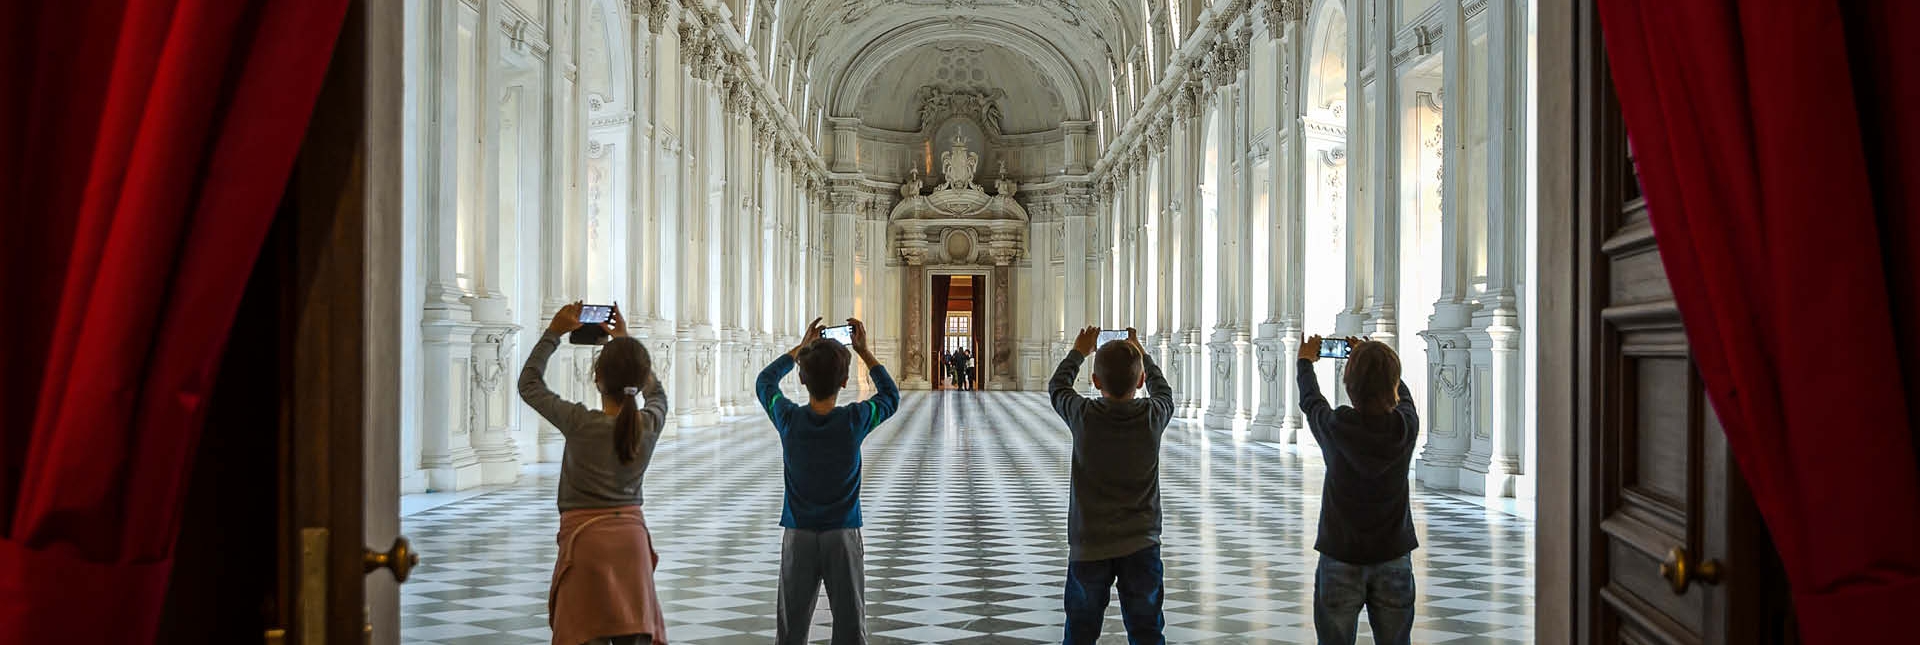 Ragazzi fotografano la Galleria Grande - Foto di Paolo Scaglione